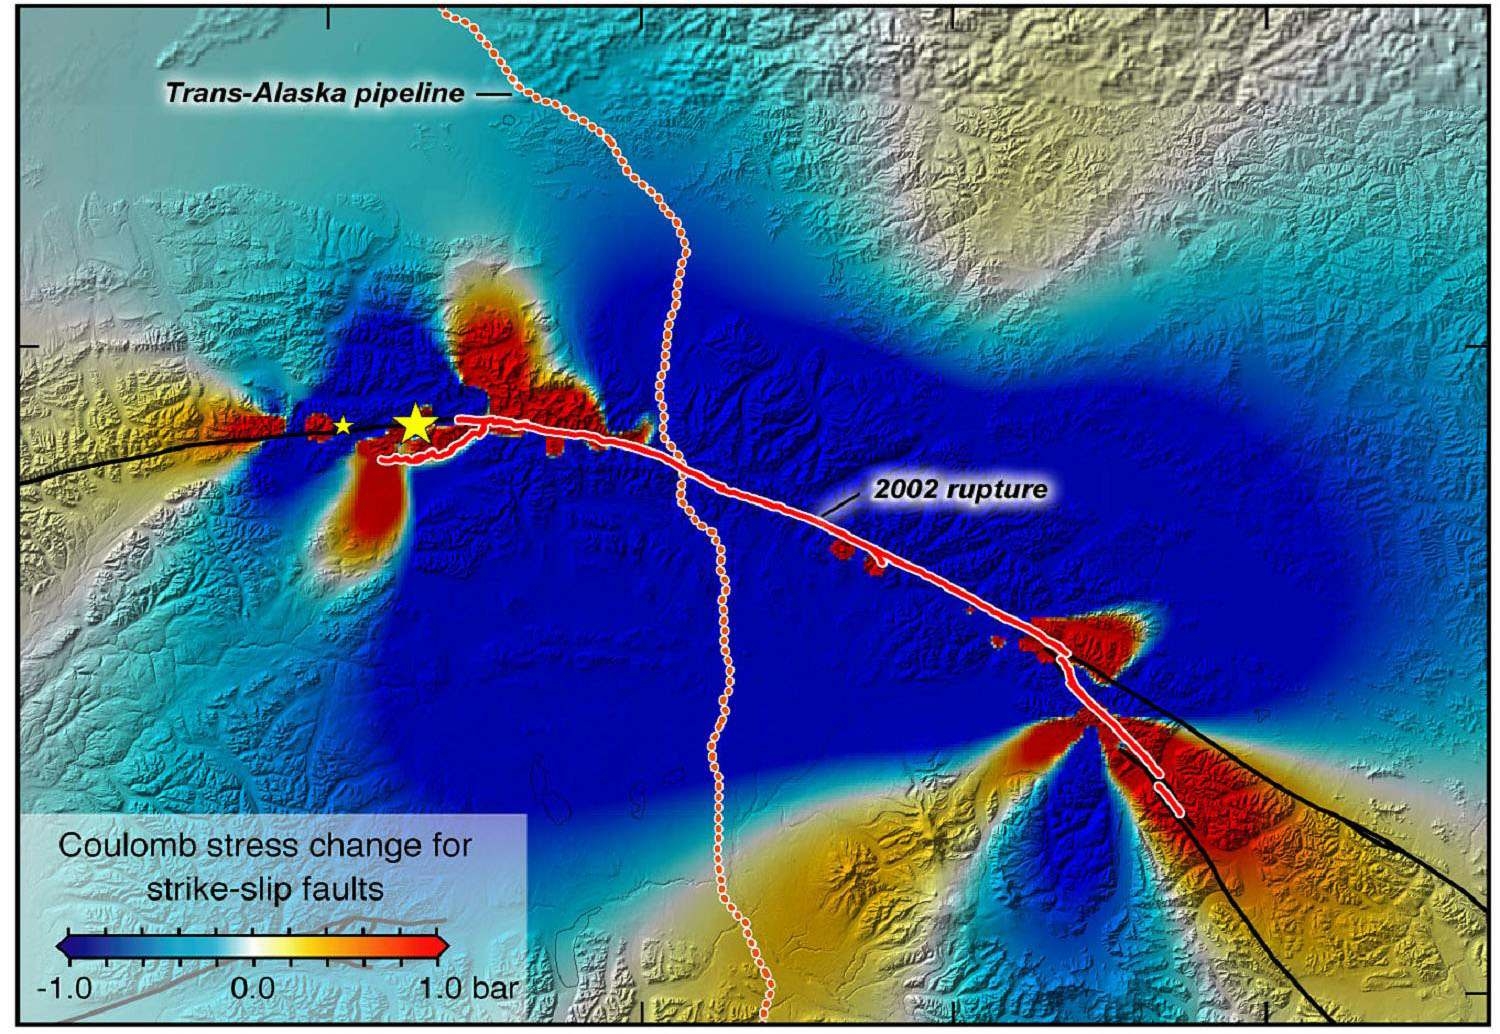 그림 1.1-1. Denali fault를 따른 지진에 의한 단층 주변의 쿨롬응력변화와 Trans-Alaska pipeline의 위치